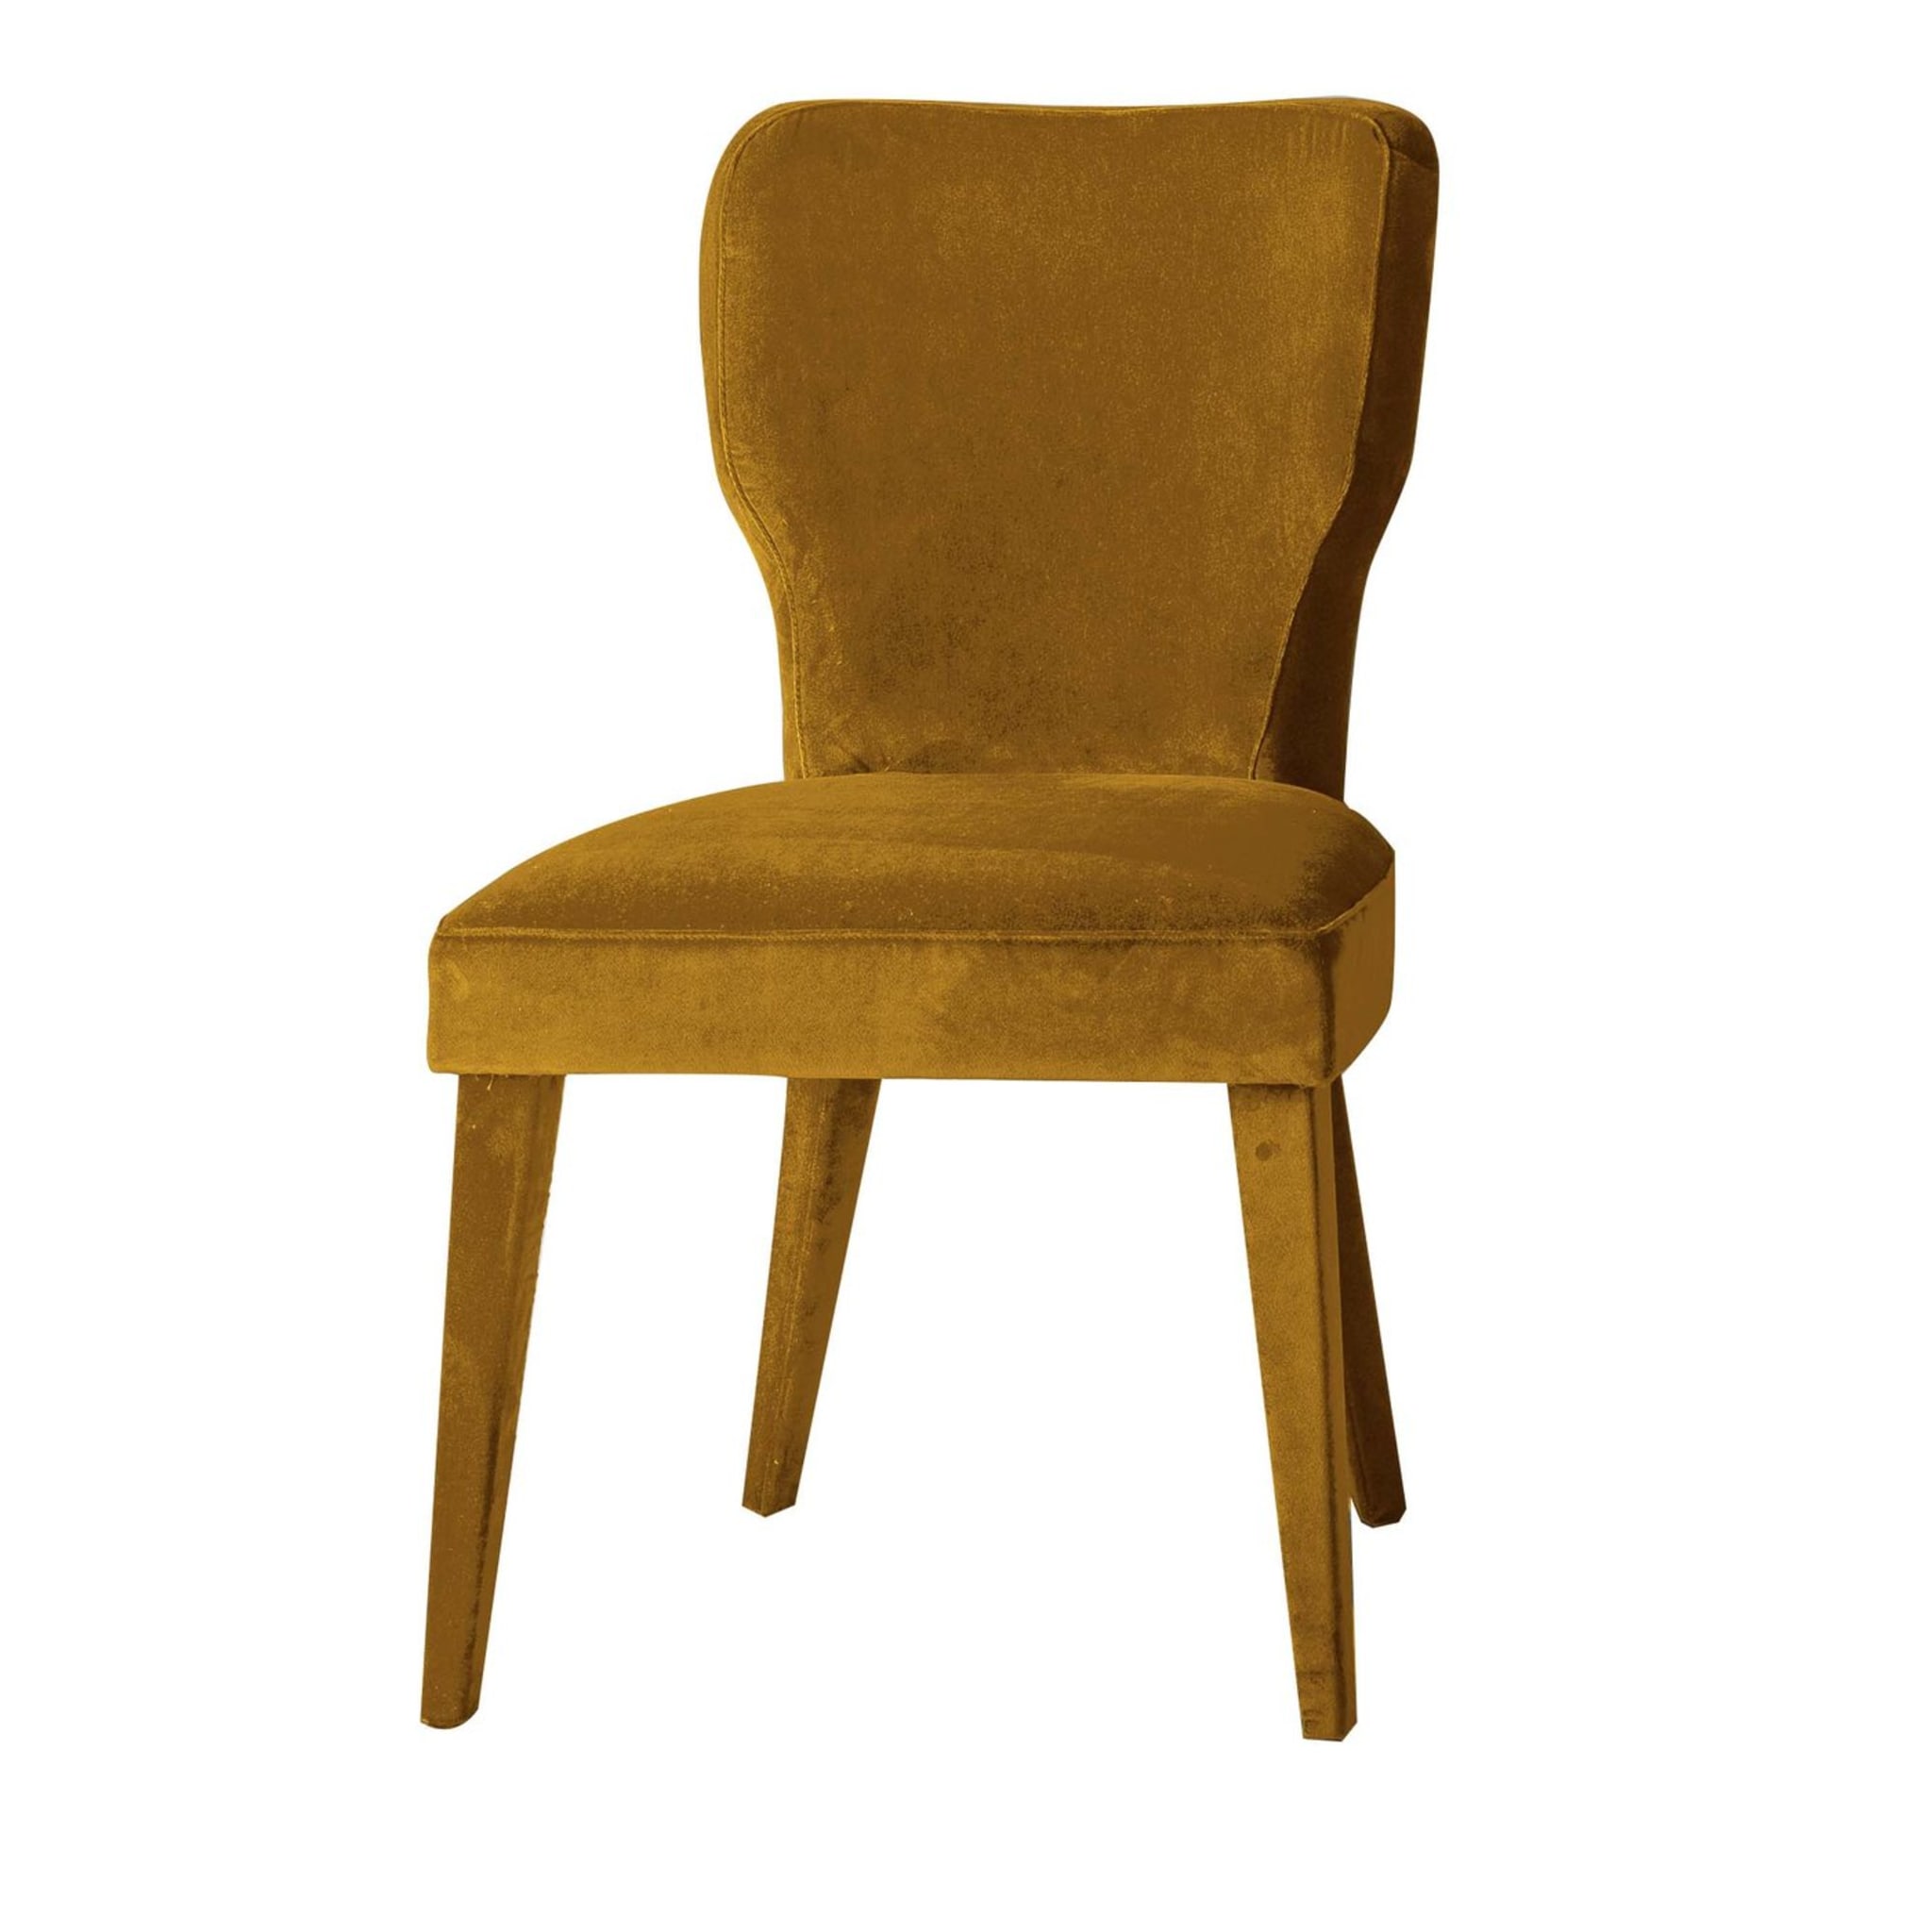 Lady V Yellow Chair by Ciarmoli Queda Studio - Main view